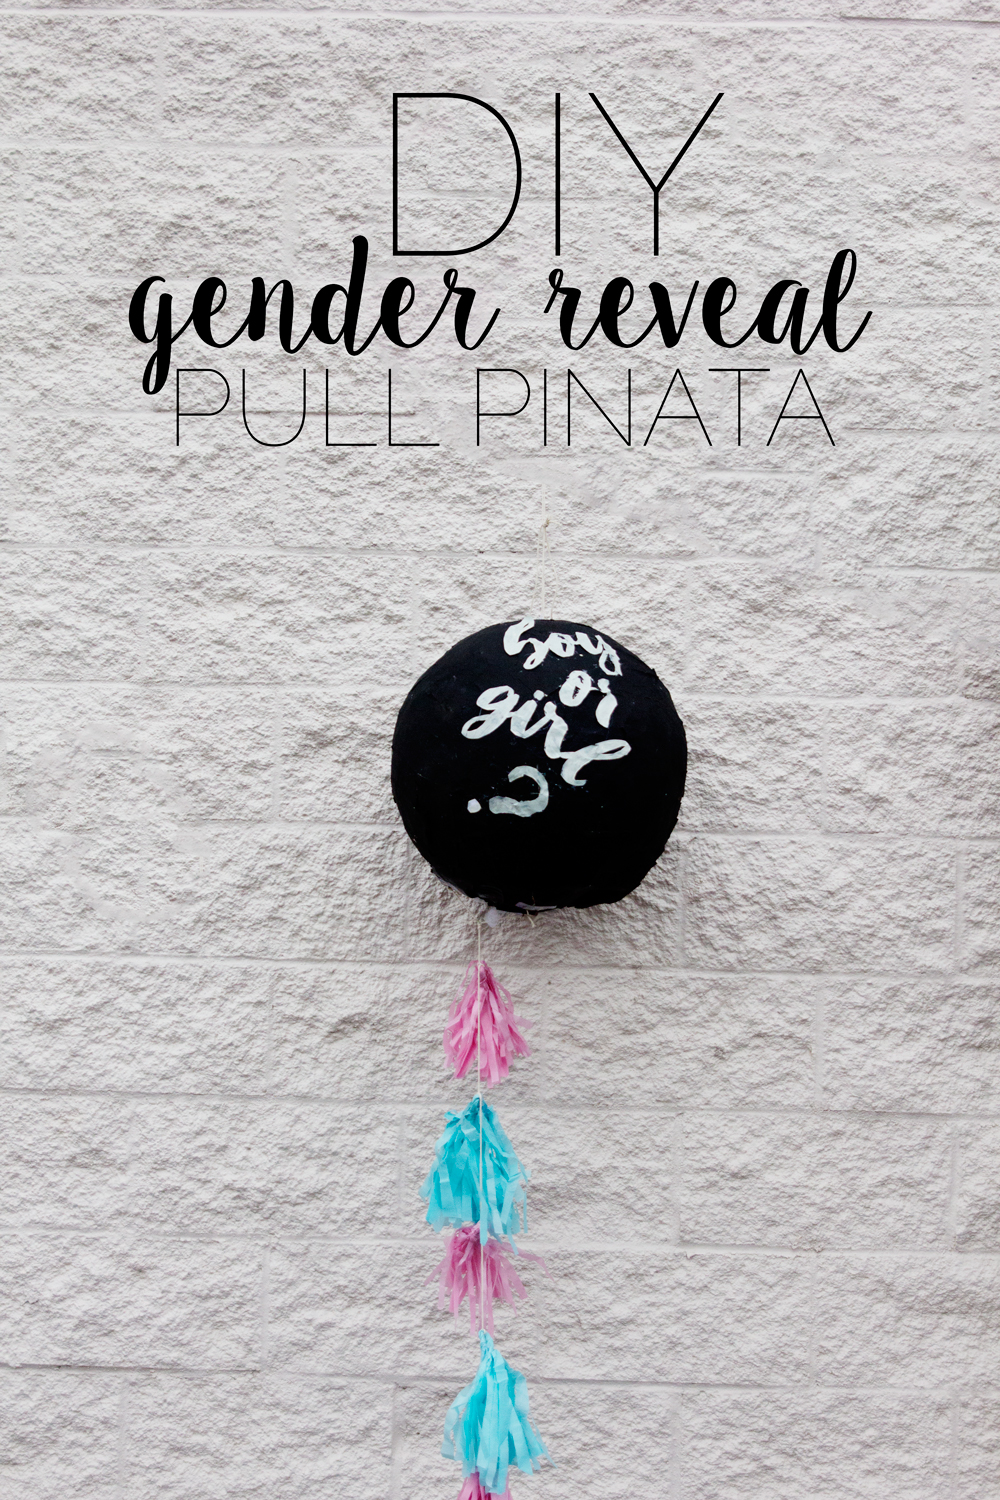 DIY Gender Reveal Piñata